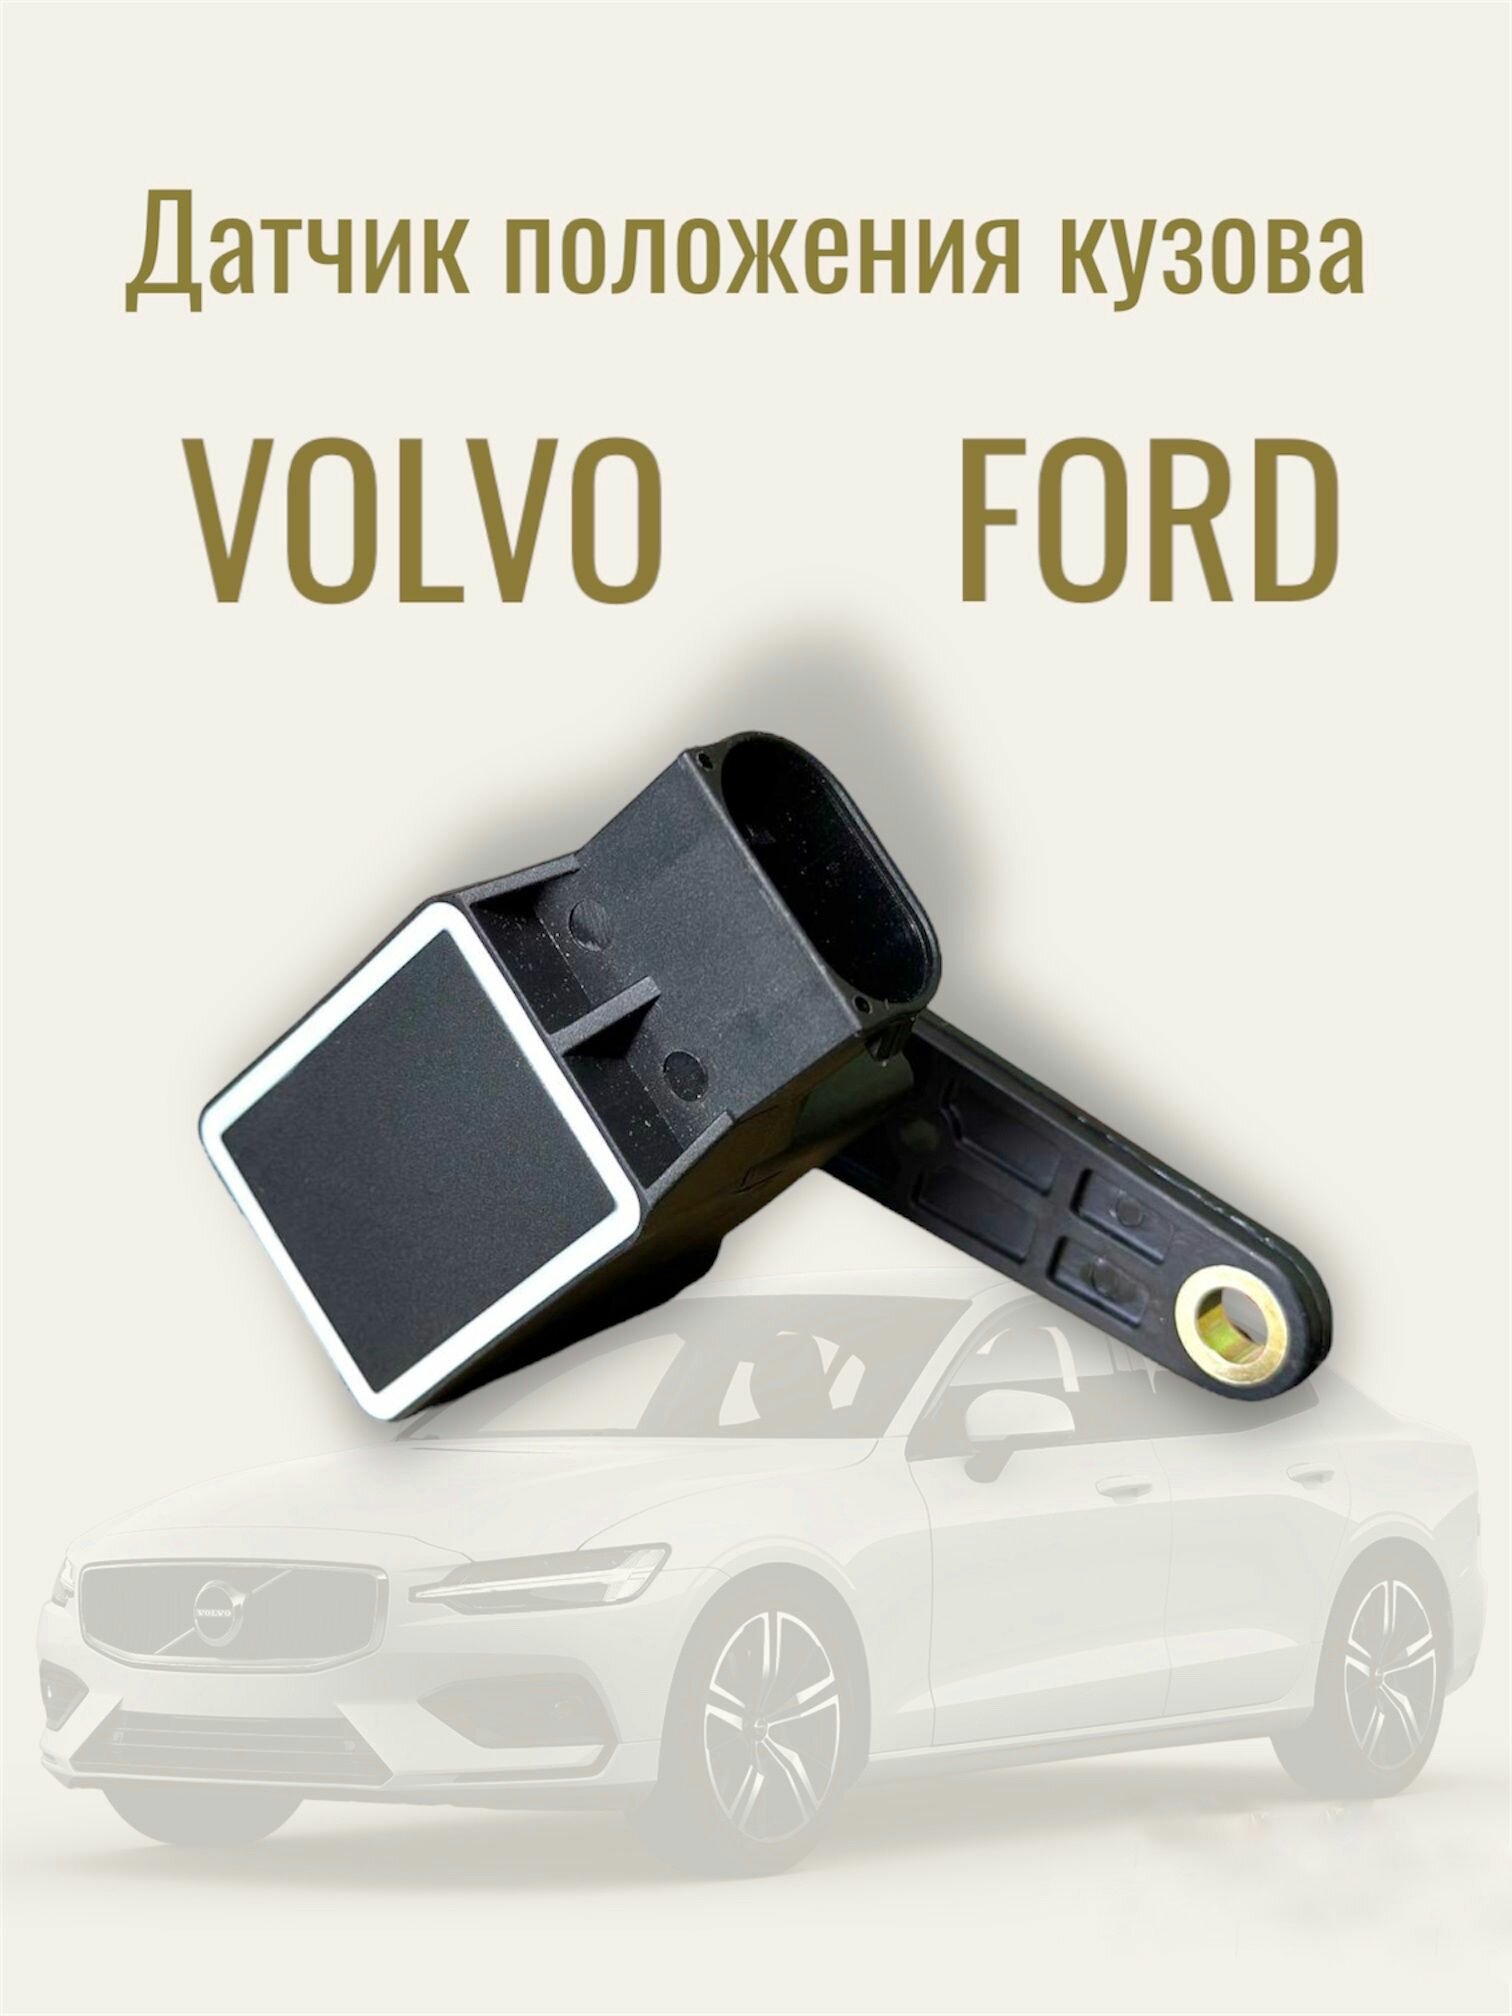 Датчик положения кузова Volvo Ford